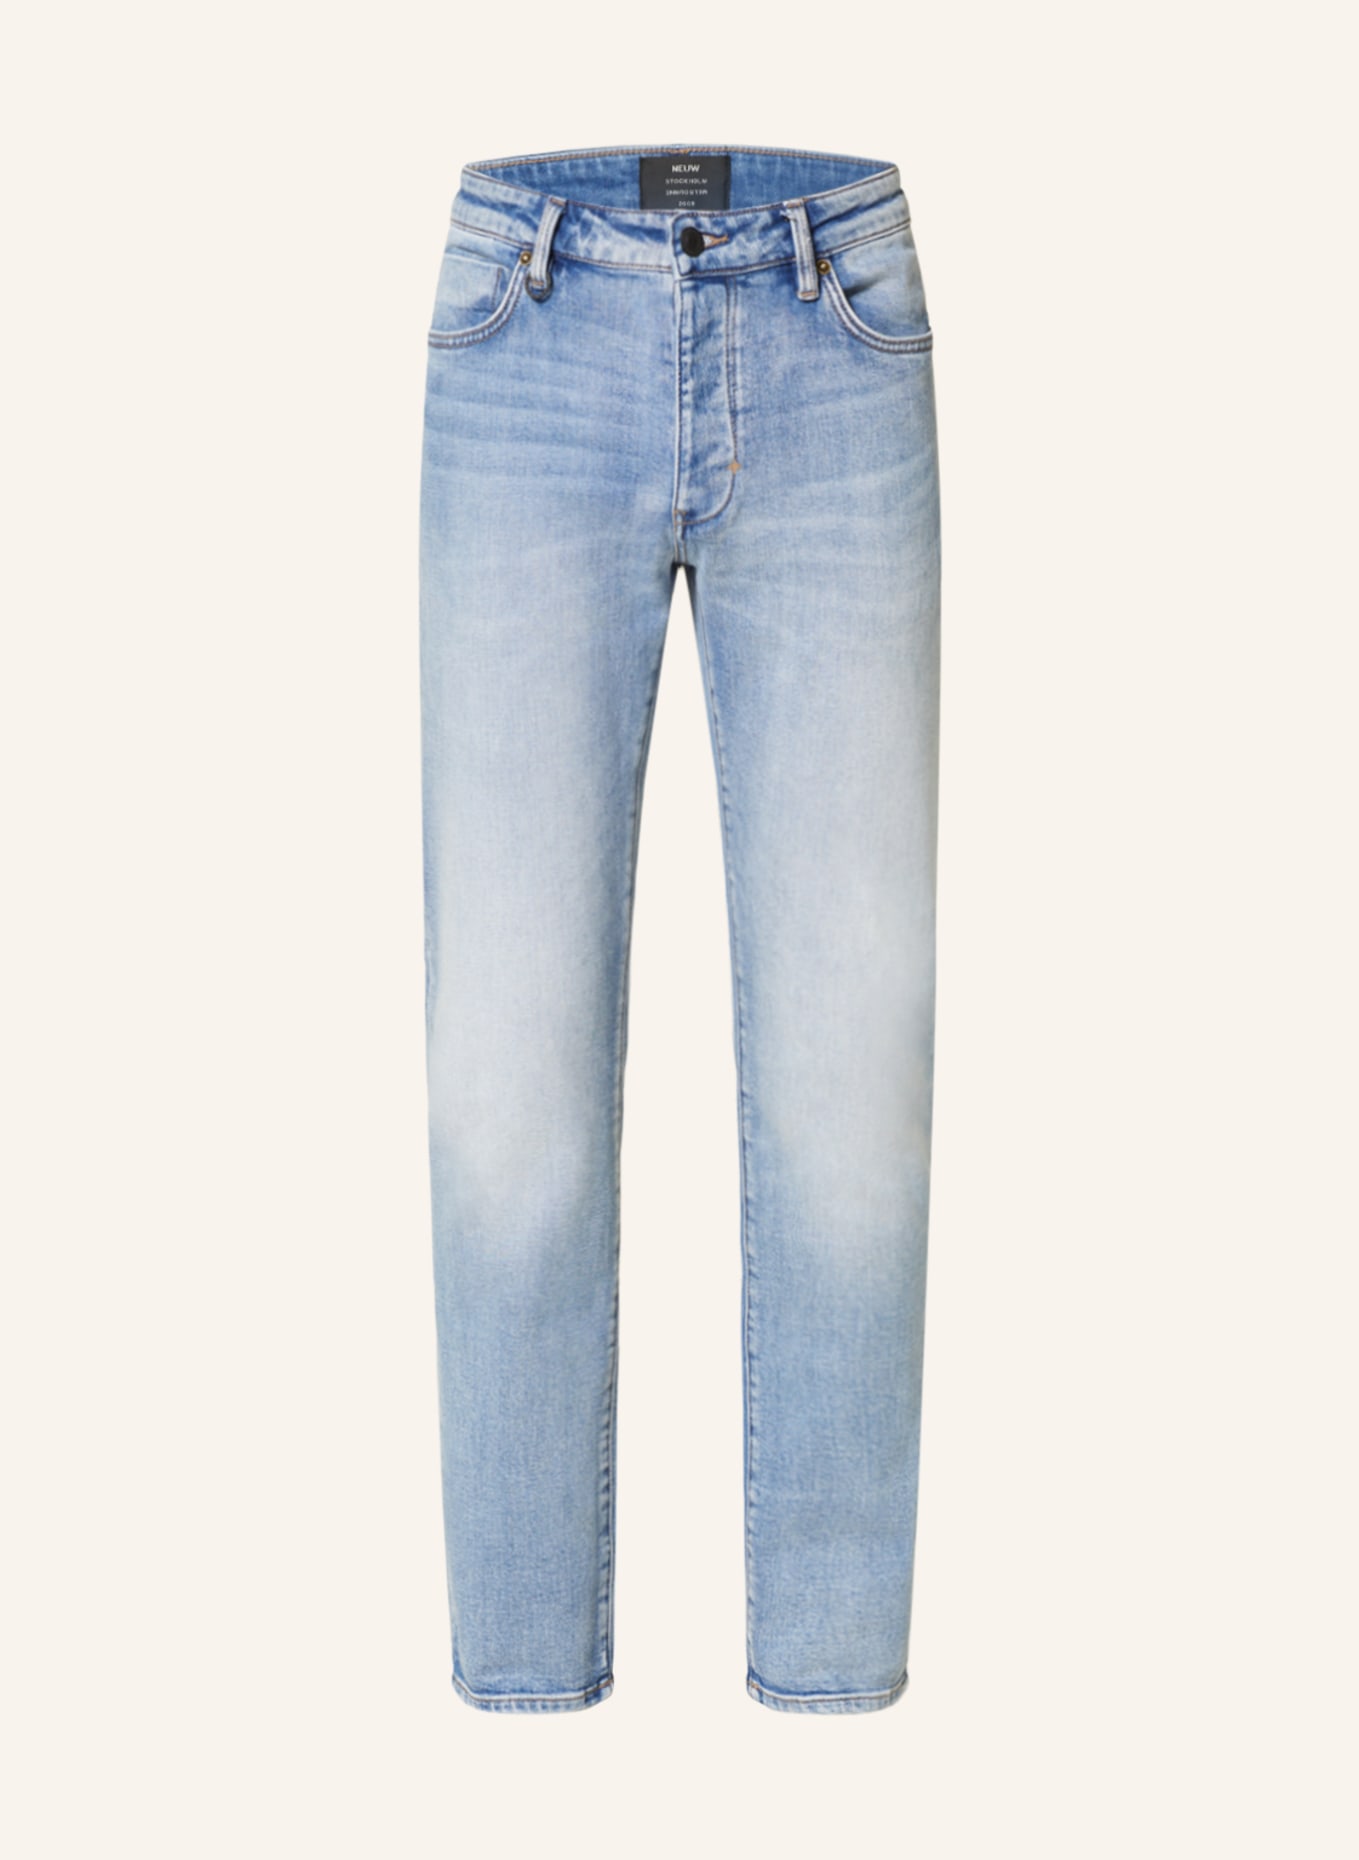 NEUW Jeans LOU Slim Fit, Farbe: Fazer (Bild 1)